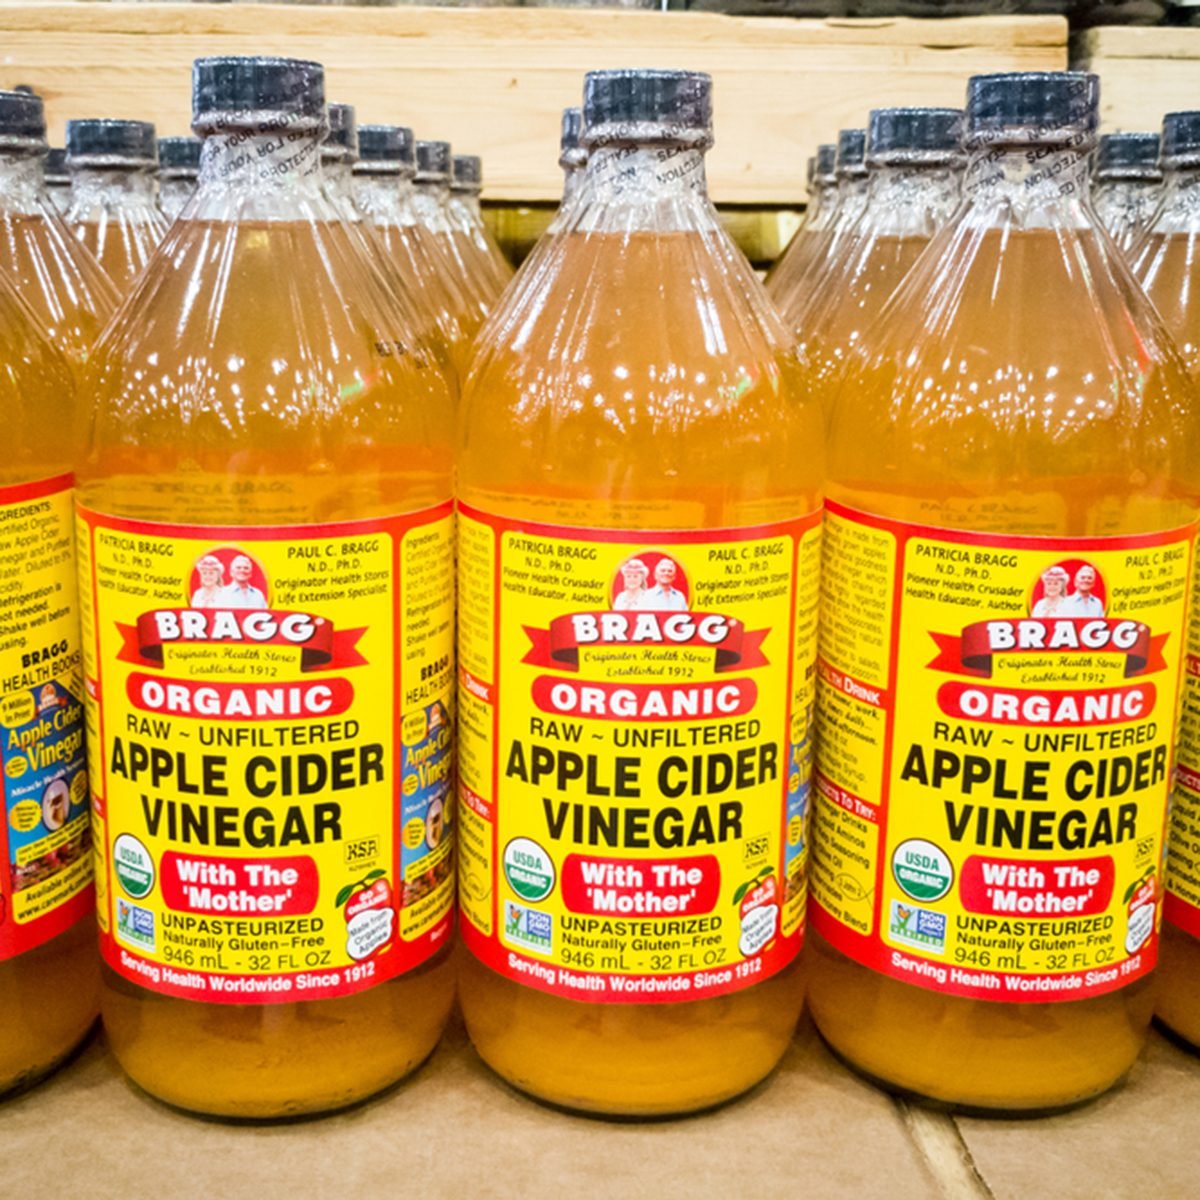 10 Ways To Use Apple Cider Vinegar, Apple Cider Vinegar On Hardwood Floors